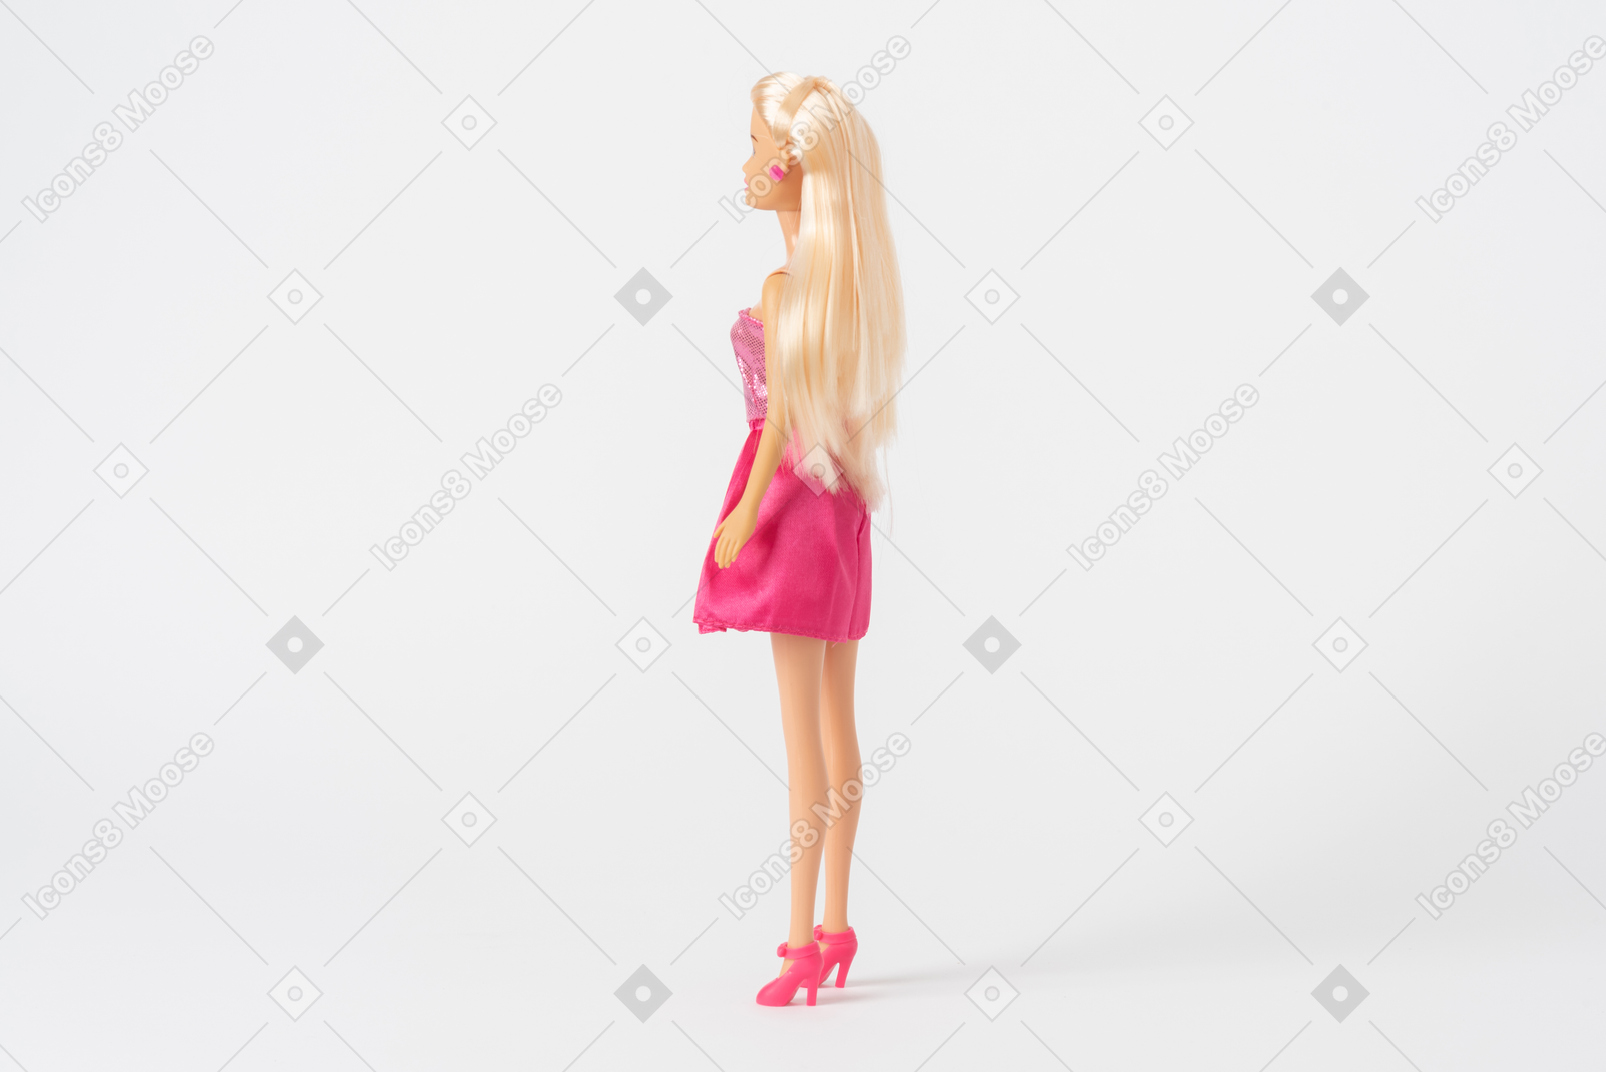 Ein seitenschuß einer barbie-puppe in einem glänzenden rosafarbenen kleid und in den rosafarbenen hohen absätzen, stehend getrennt gegen einen normalen weißen hintergrund